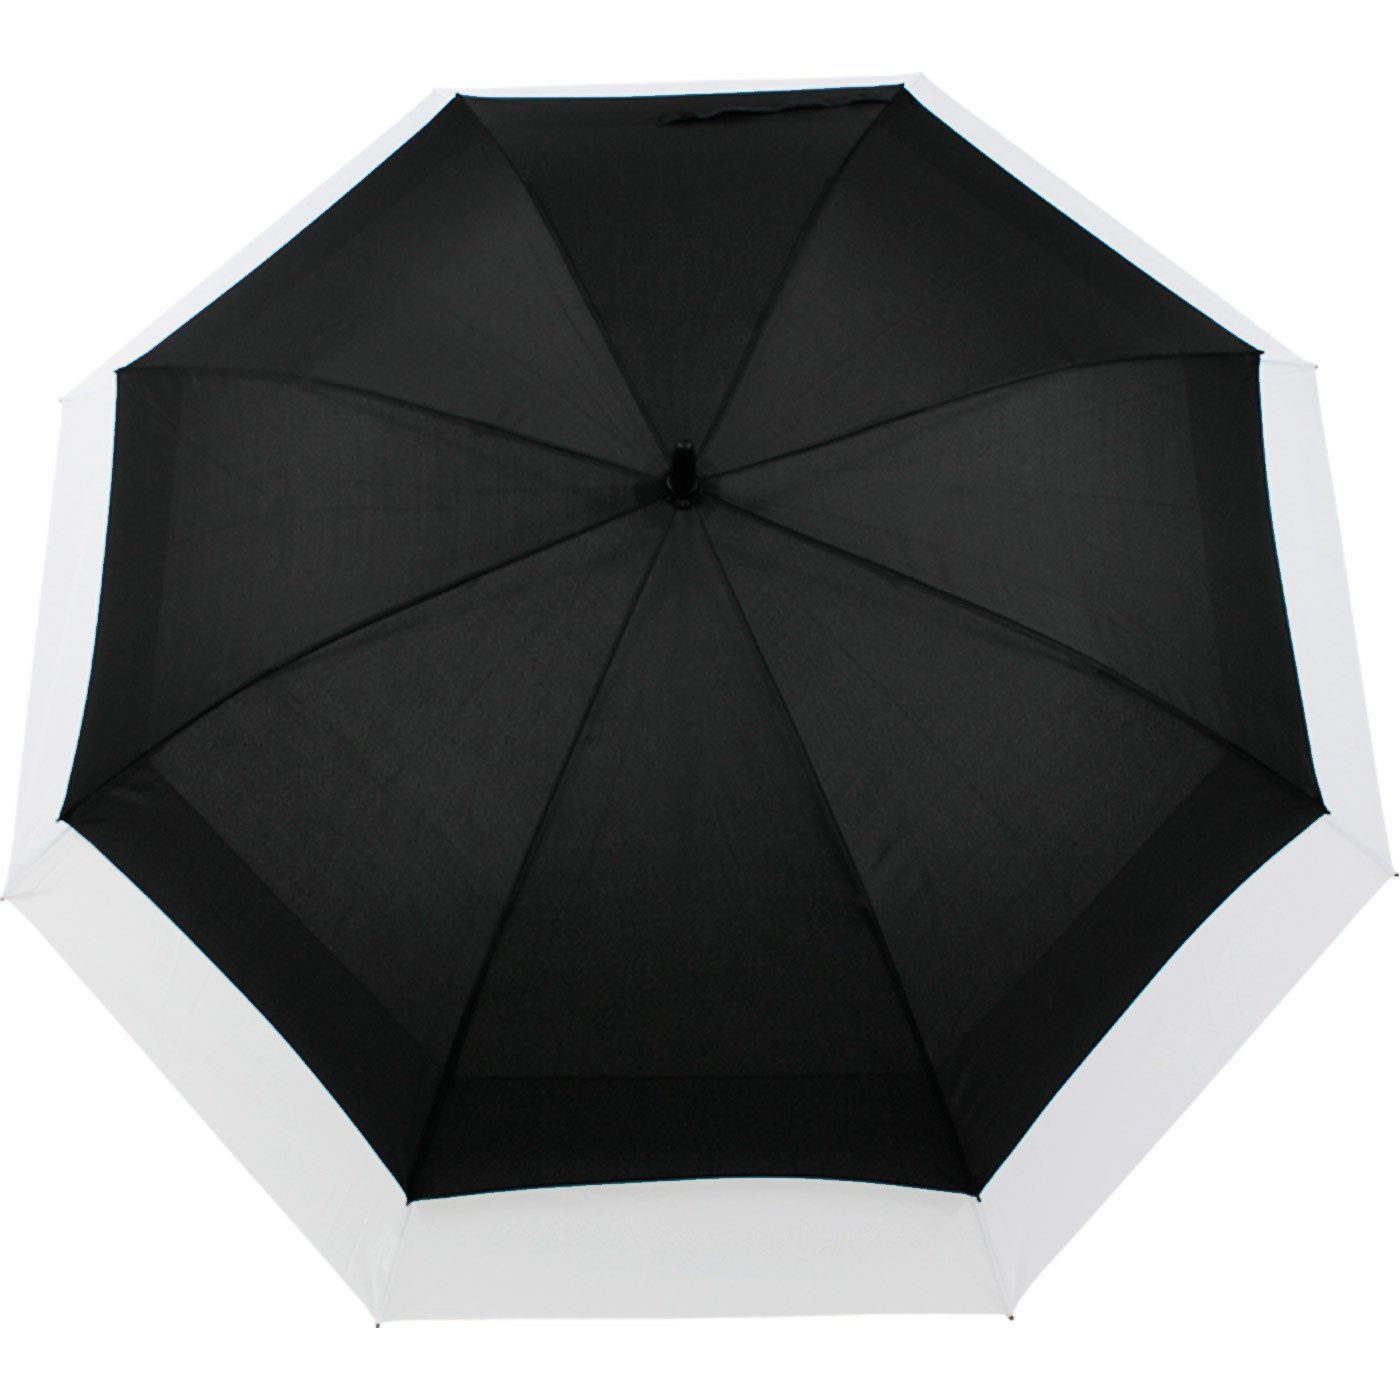 iX-brella Langregenschirm Move to mit expandierender schwarz-weiß zweifarbig Automatik, - Schirm XXL